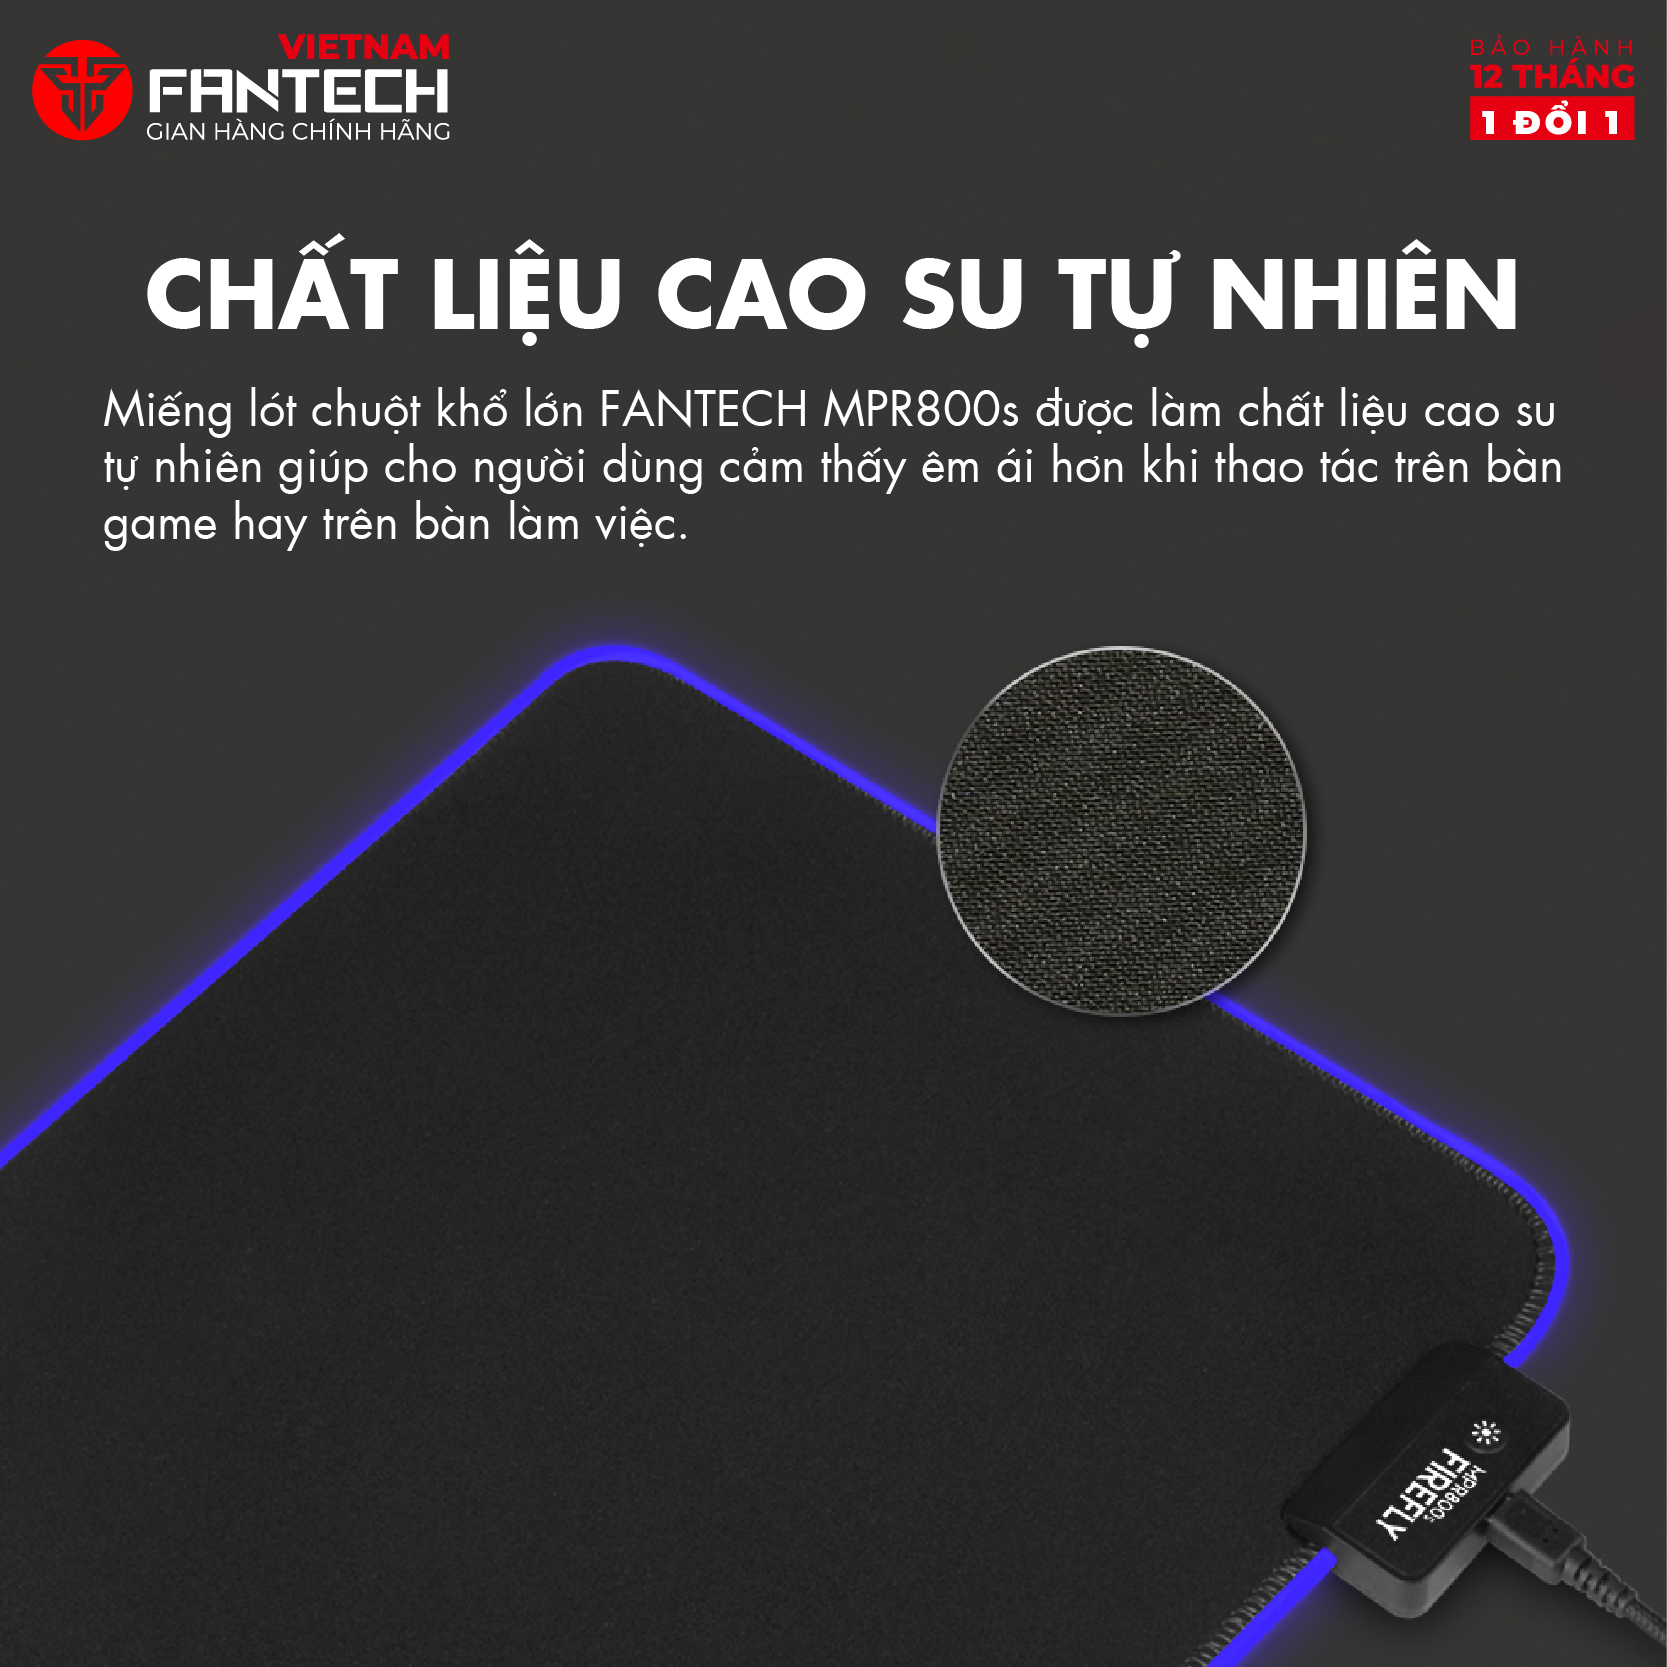 Miếng Lót Chuột Gaming Cỡ Lớn 80 x 30 x 0.4mm Fullsized FANTECH MPR800s FIREFLY Viền LED RGB 7 Chế...